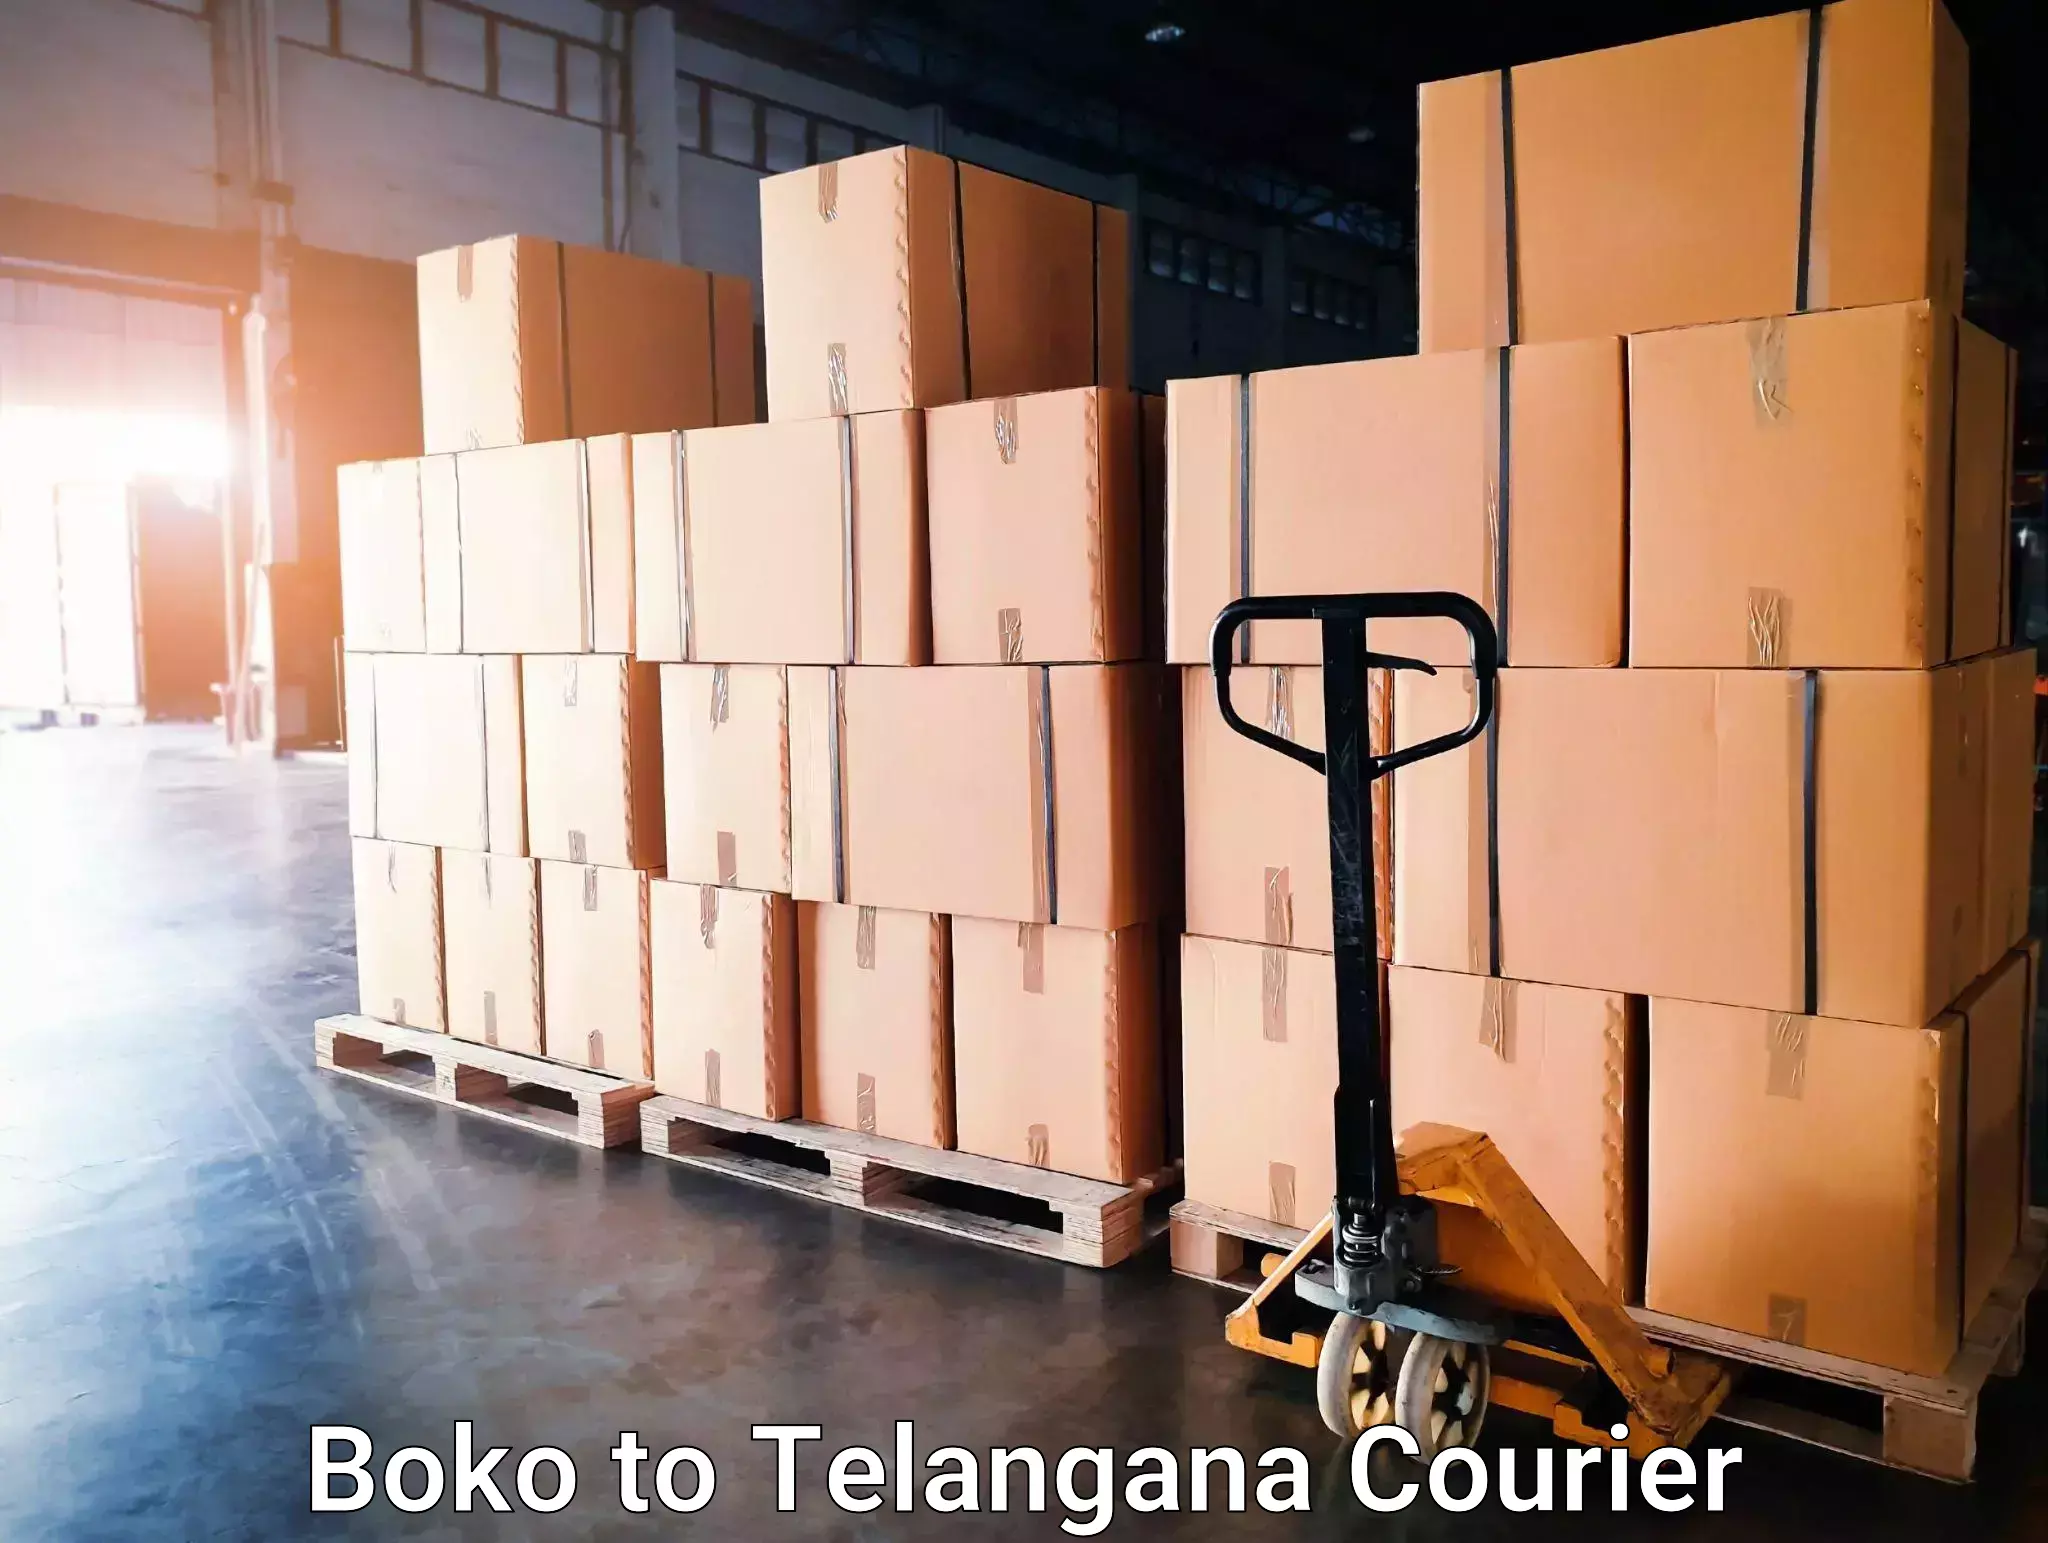 Express courier facilities Boko to Sujatha Nagar